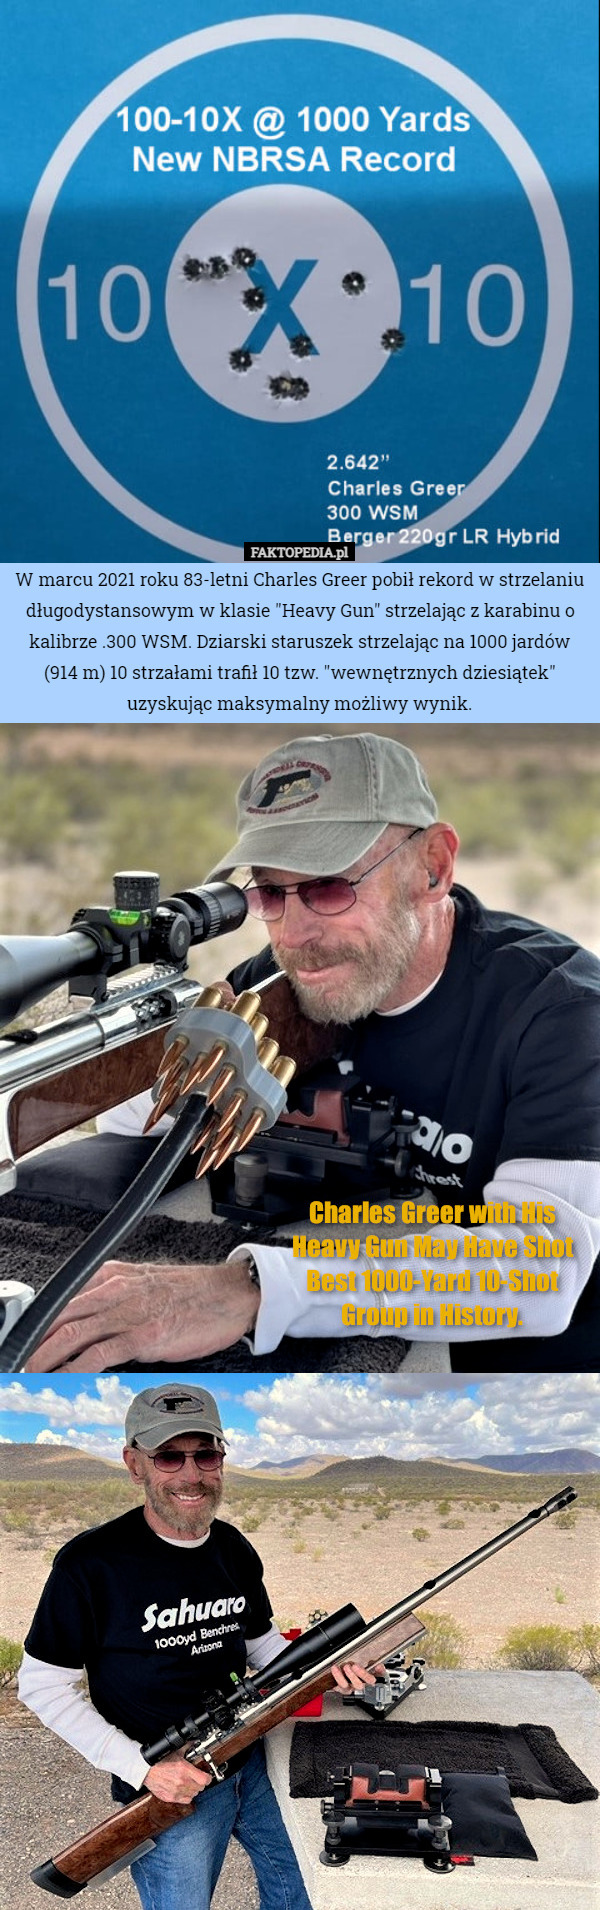 W marcu 2021 roku 83-letni Charles Greer pobił rekord w strzelaniu długodystansowym w klasie "Heavy Gun" strzelając z karabinu o kalibrze .300 WSM. Dziarski staruszek strzelając na 1000 jardów (914 m) 10 strzałami trafił 10 tzw. "wewnętrznych dziesiątek" uzyskując maksymalny możliwy wynik. 